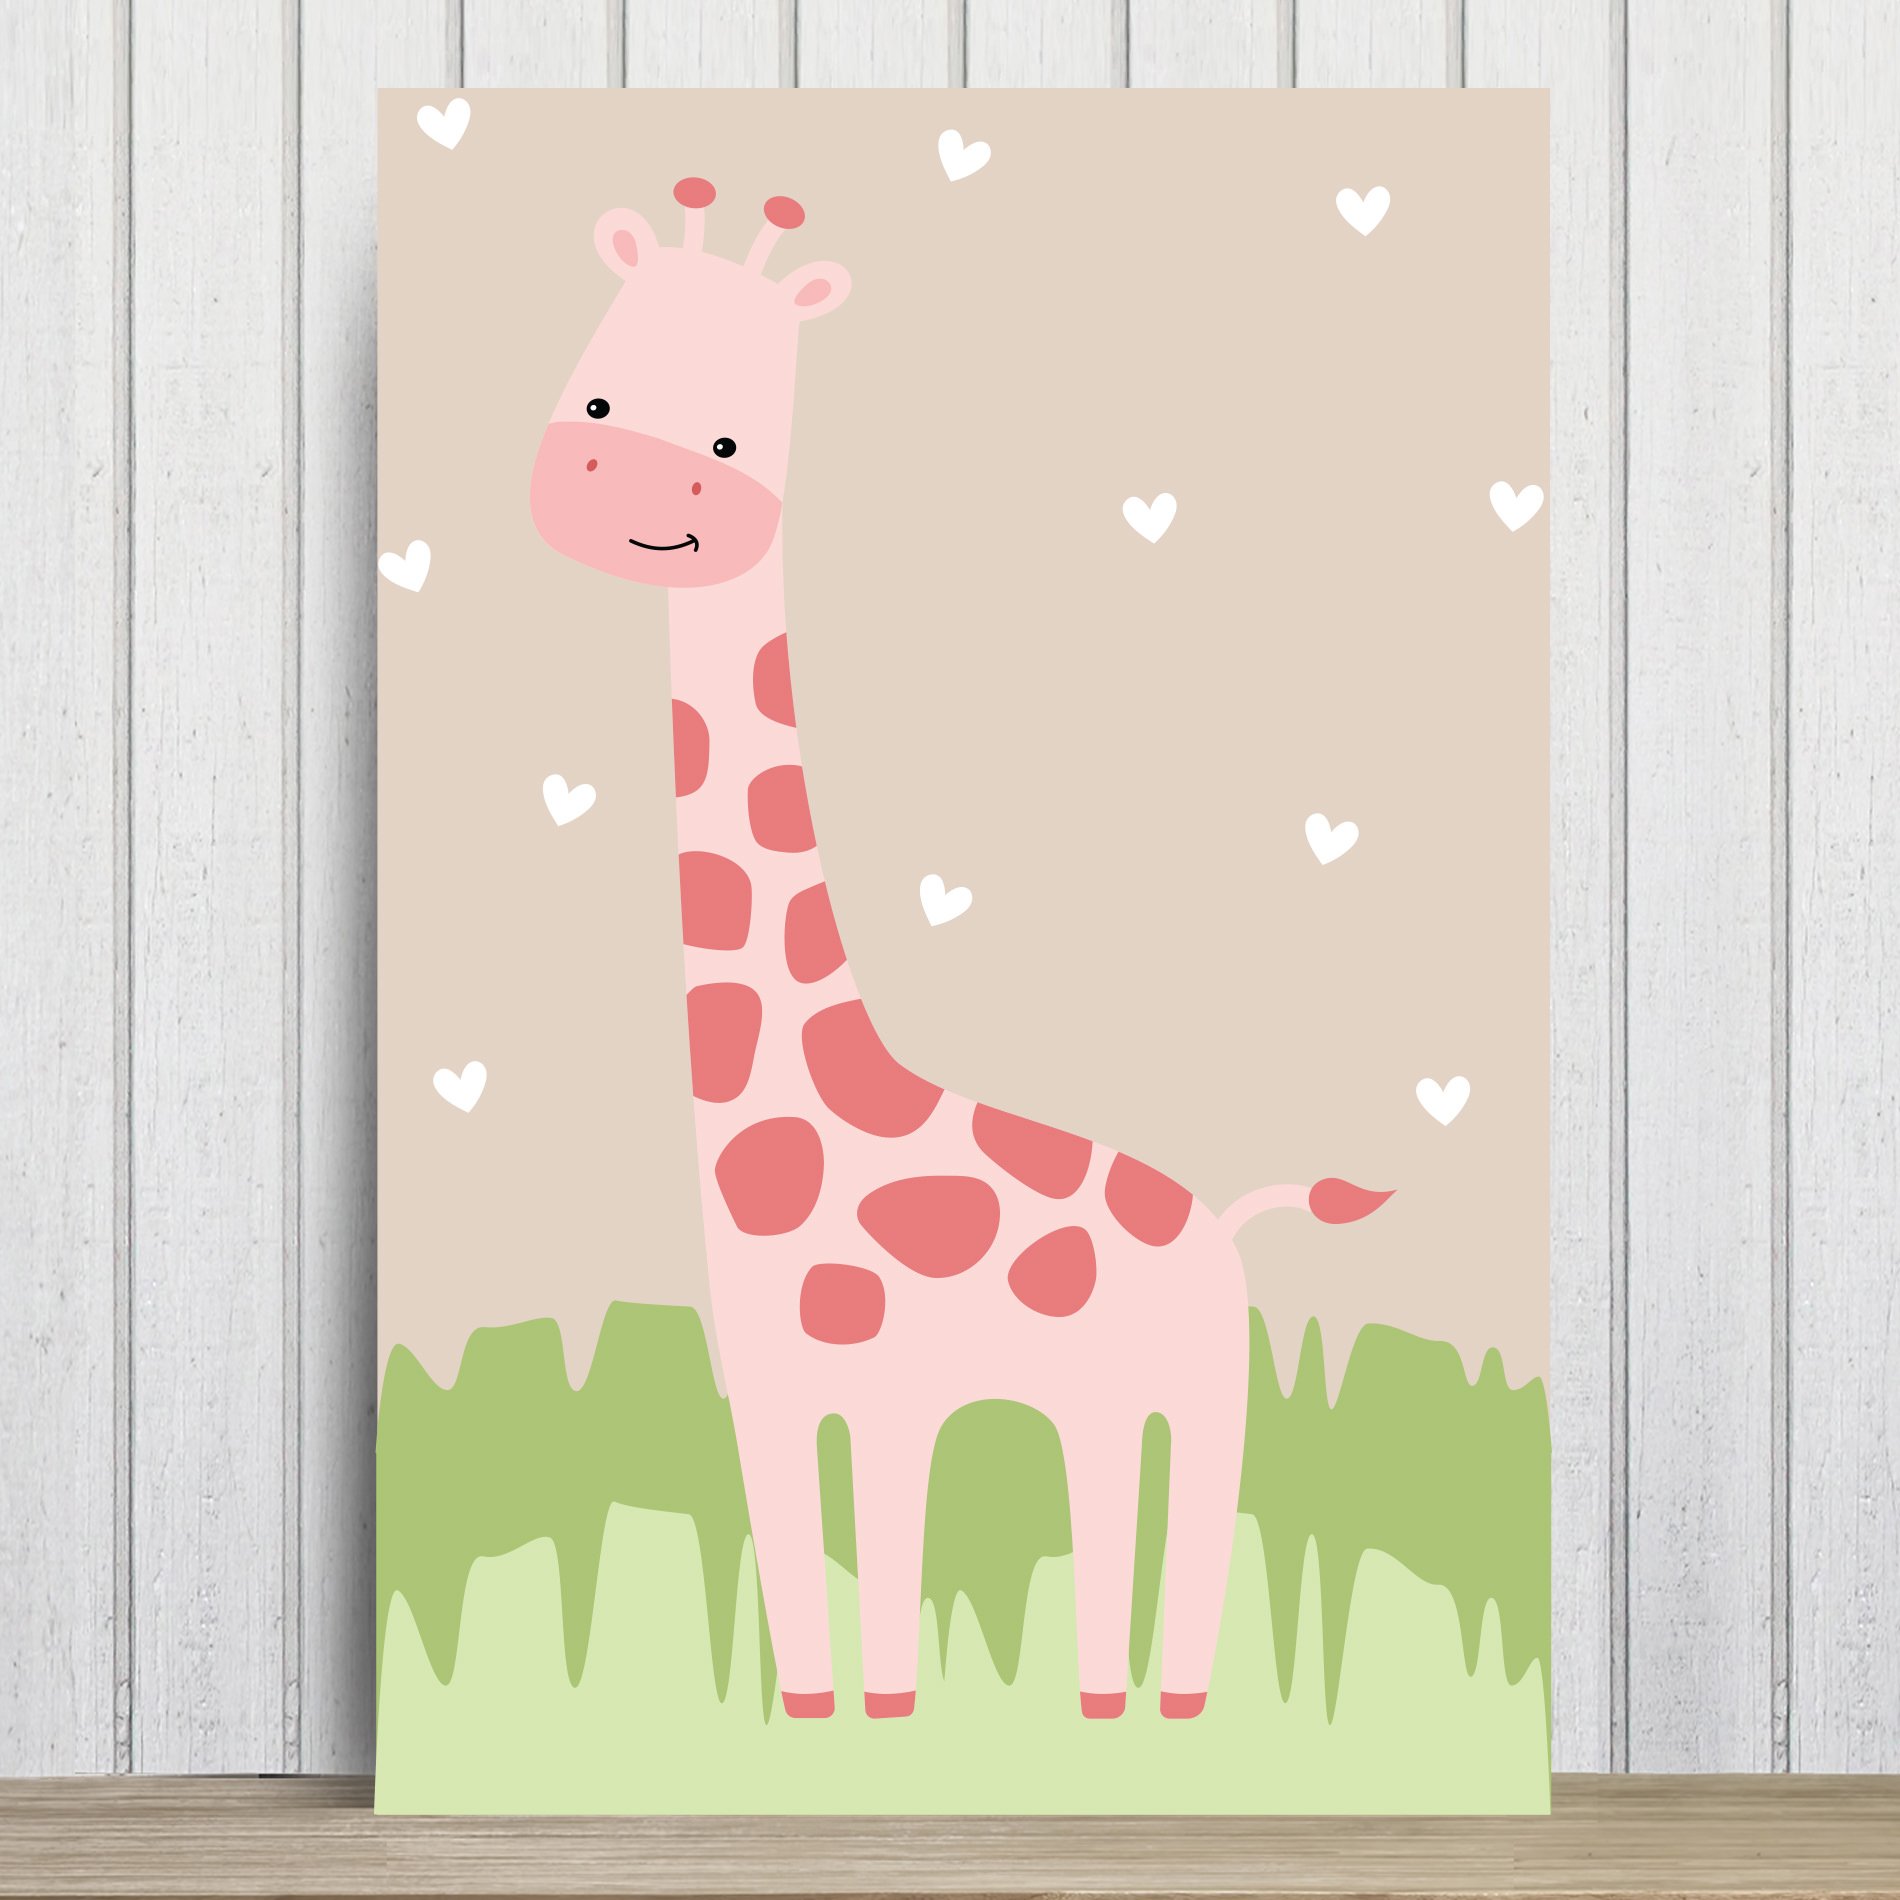 Placa Decorativa Infantil Safari Menina Girafa 30x40cm